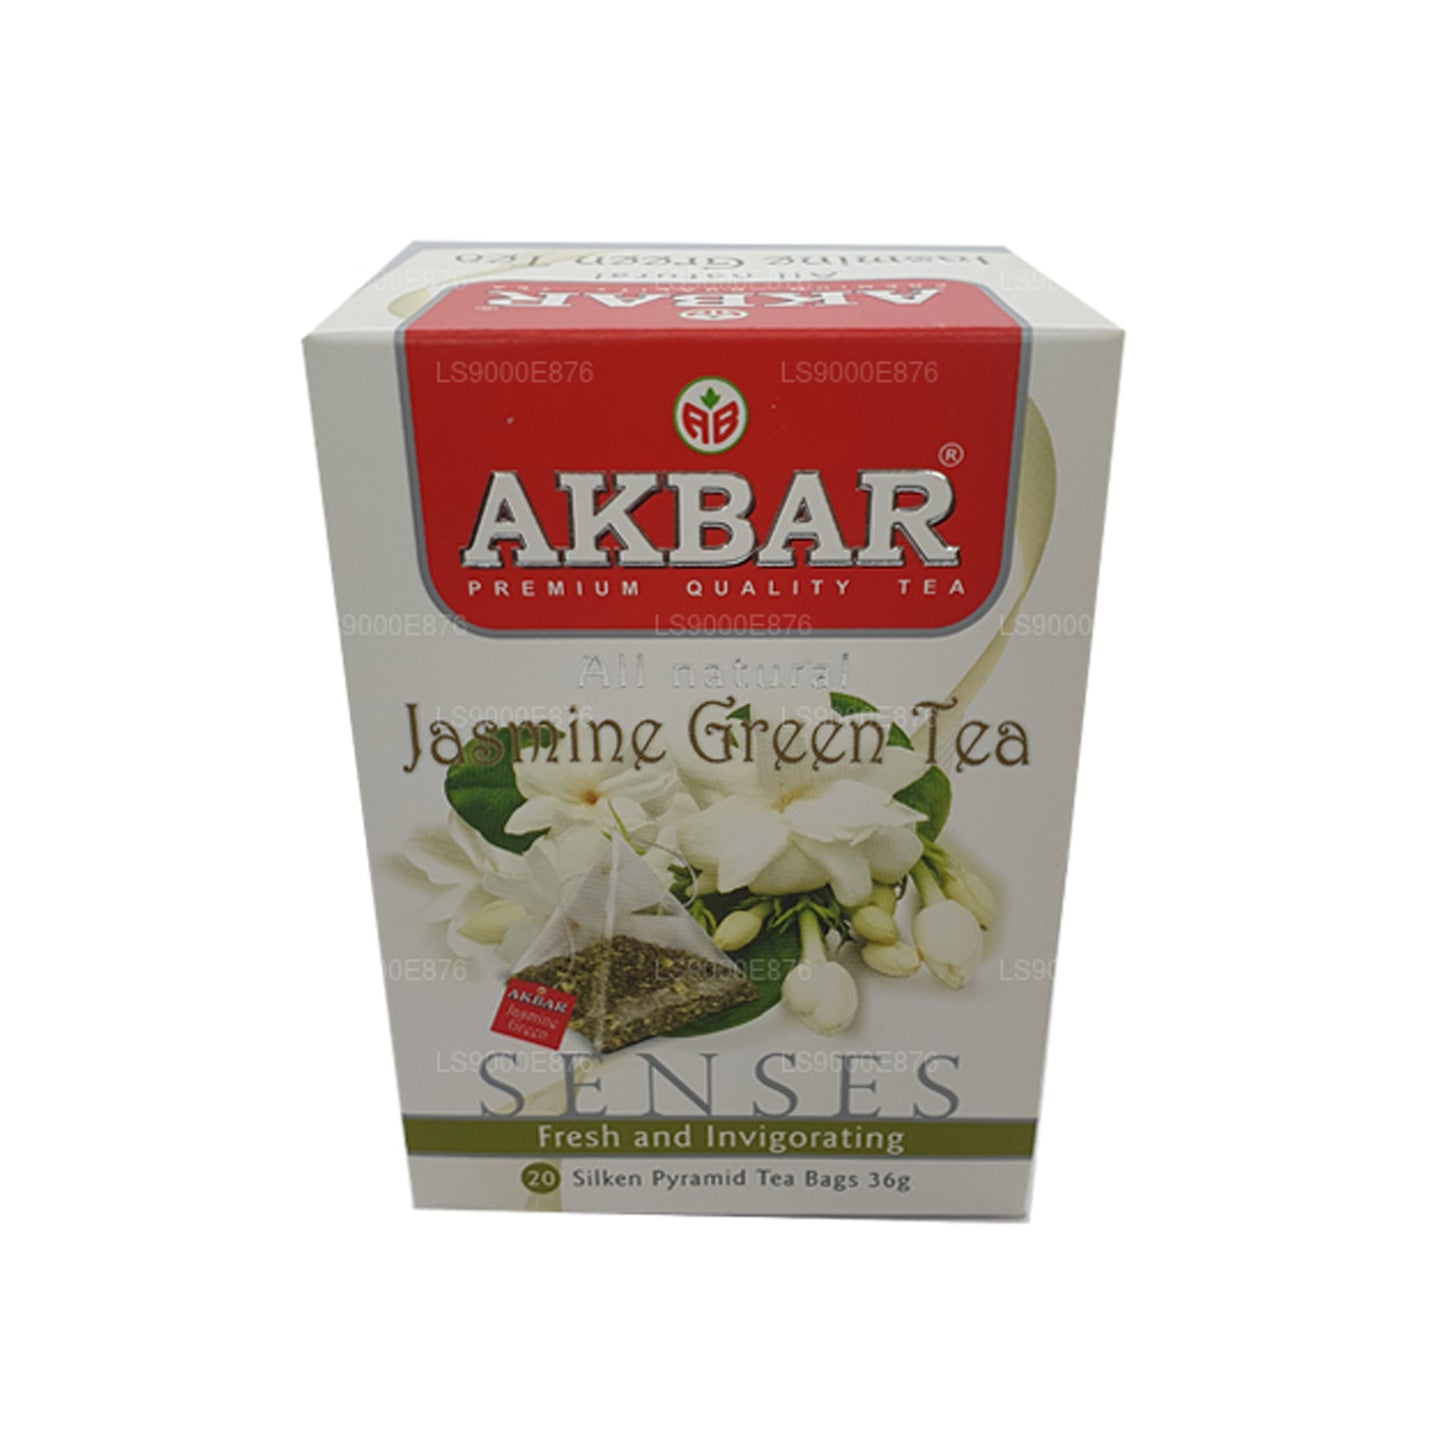 Akbar 茉莉花绿茶 (36g) 20 茶包